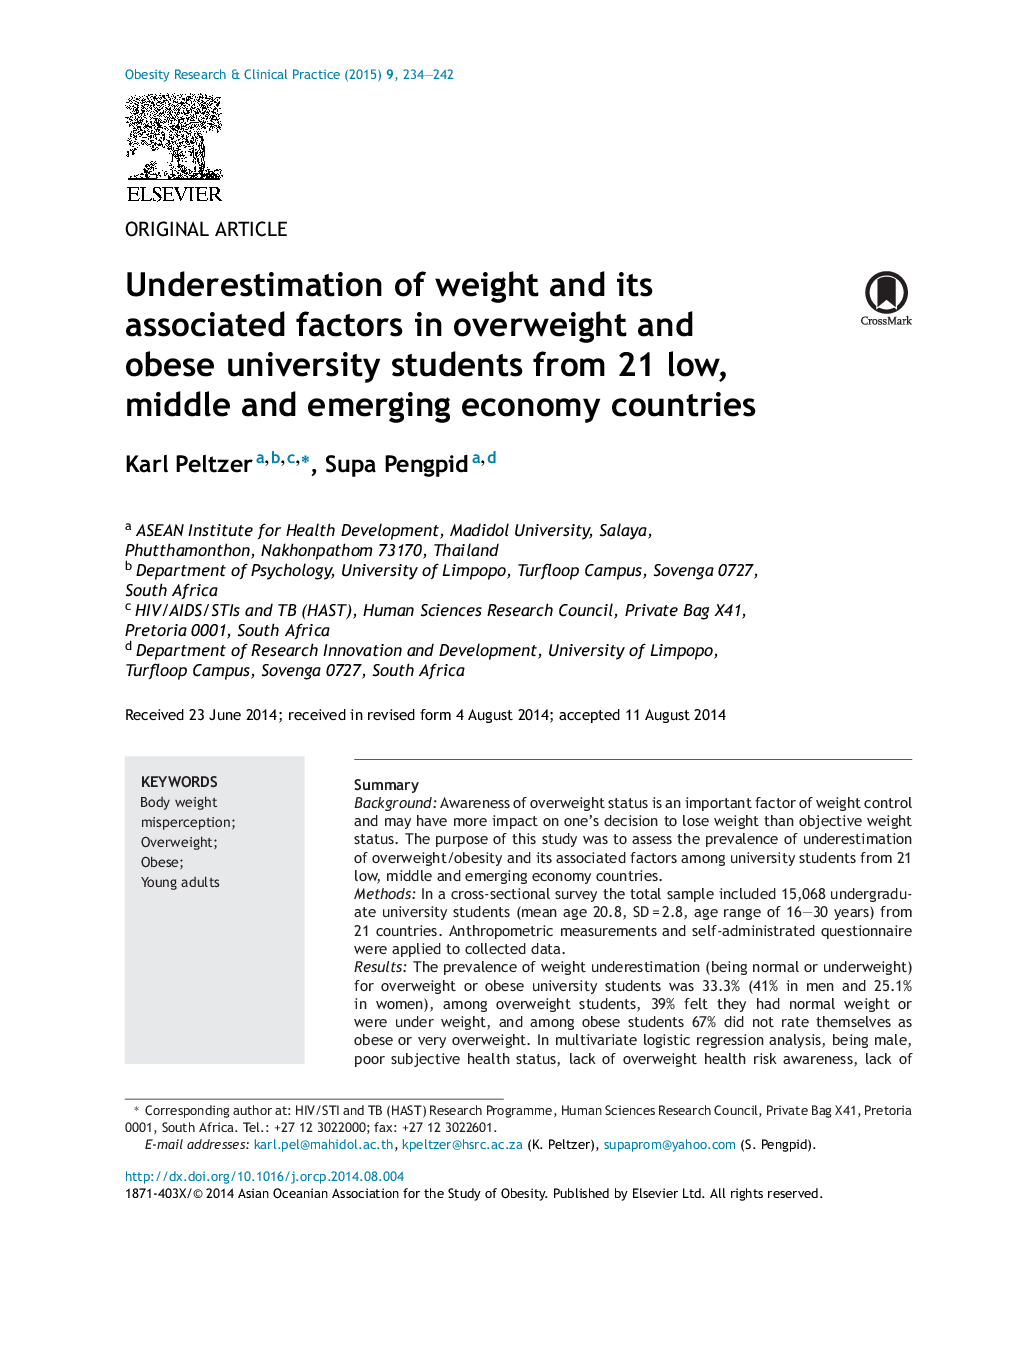 کمبود وزن و عوامل مرتبط با آن در دانشجویان دارای اضافه وزن و چاقی از 21 کشور کم، متوسط ​​و اقتصادهای در حال ظهور 